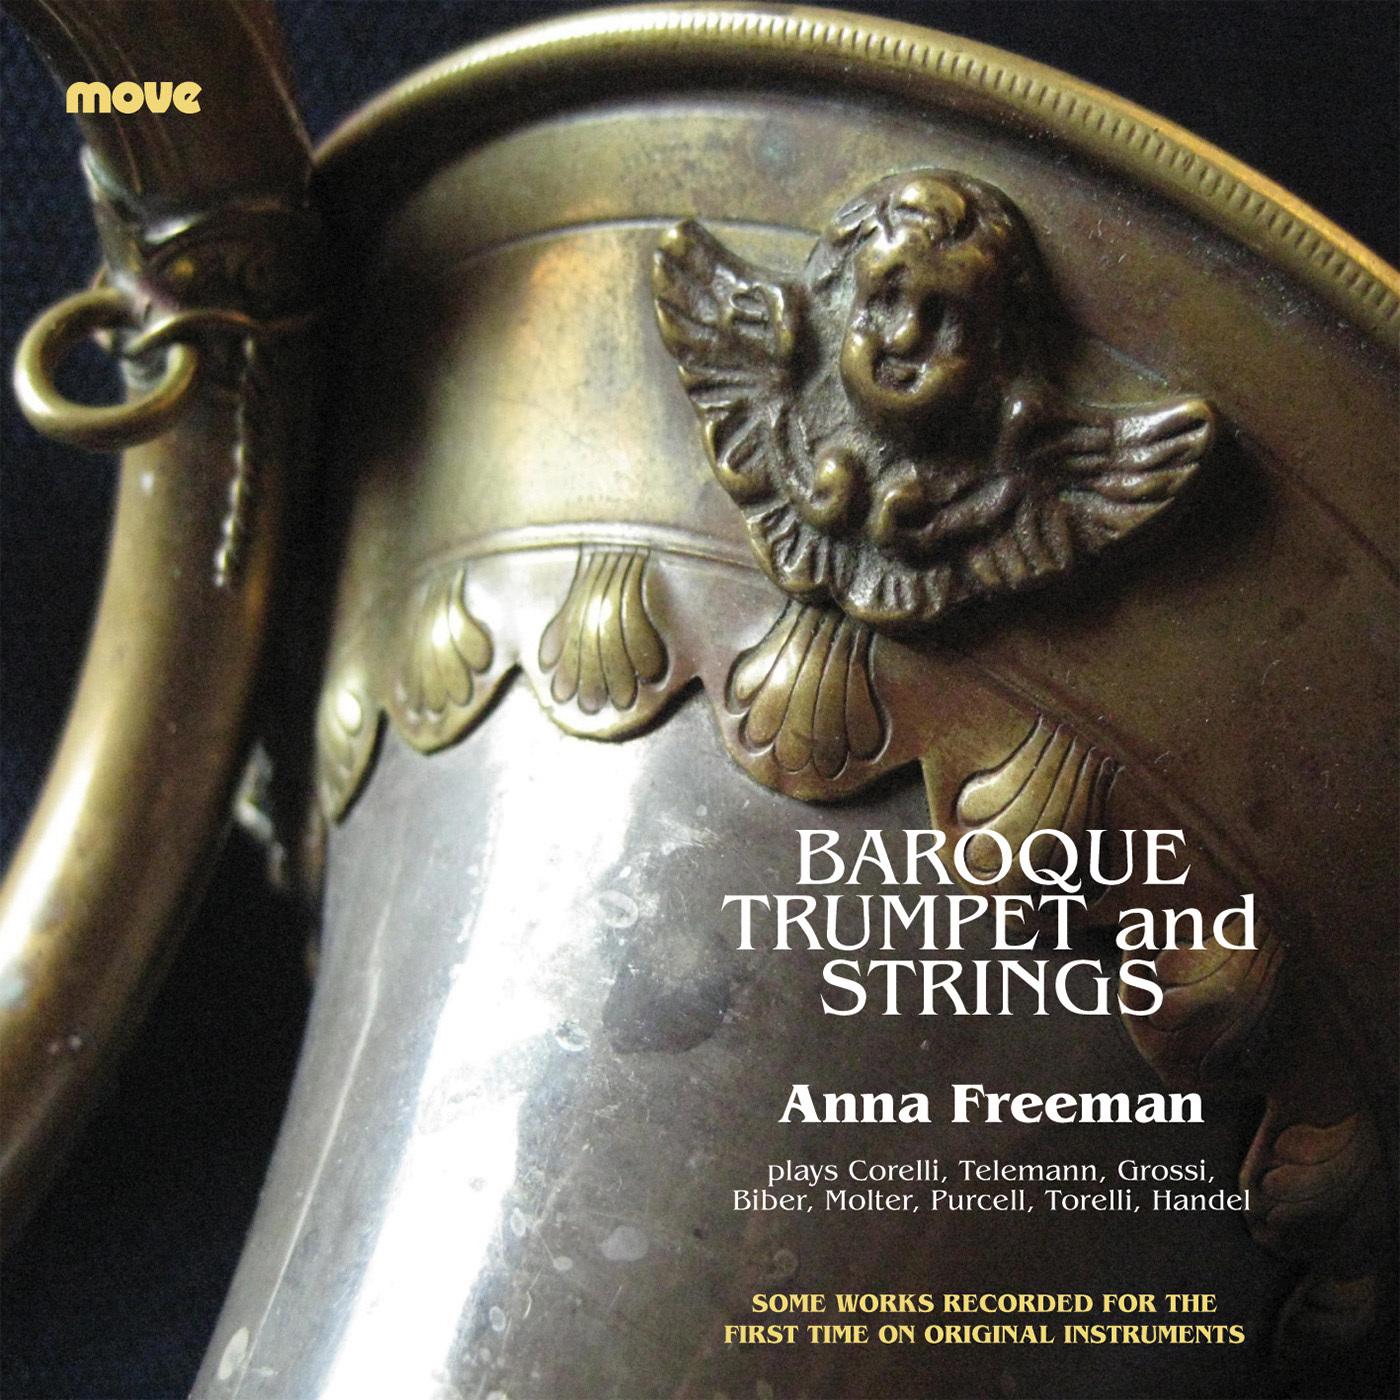 Anna Freeman - Sonata In C Major - 2. Adagio-Presto